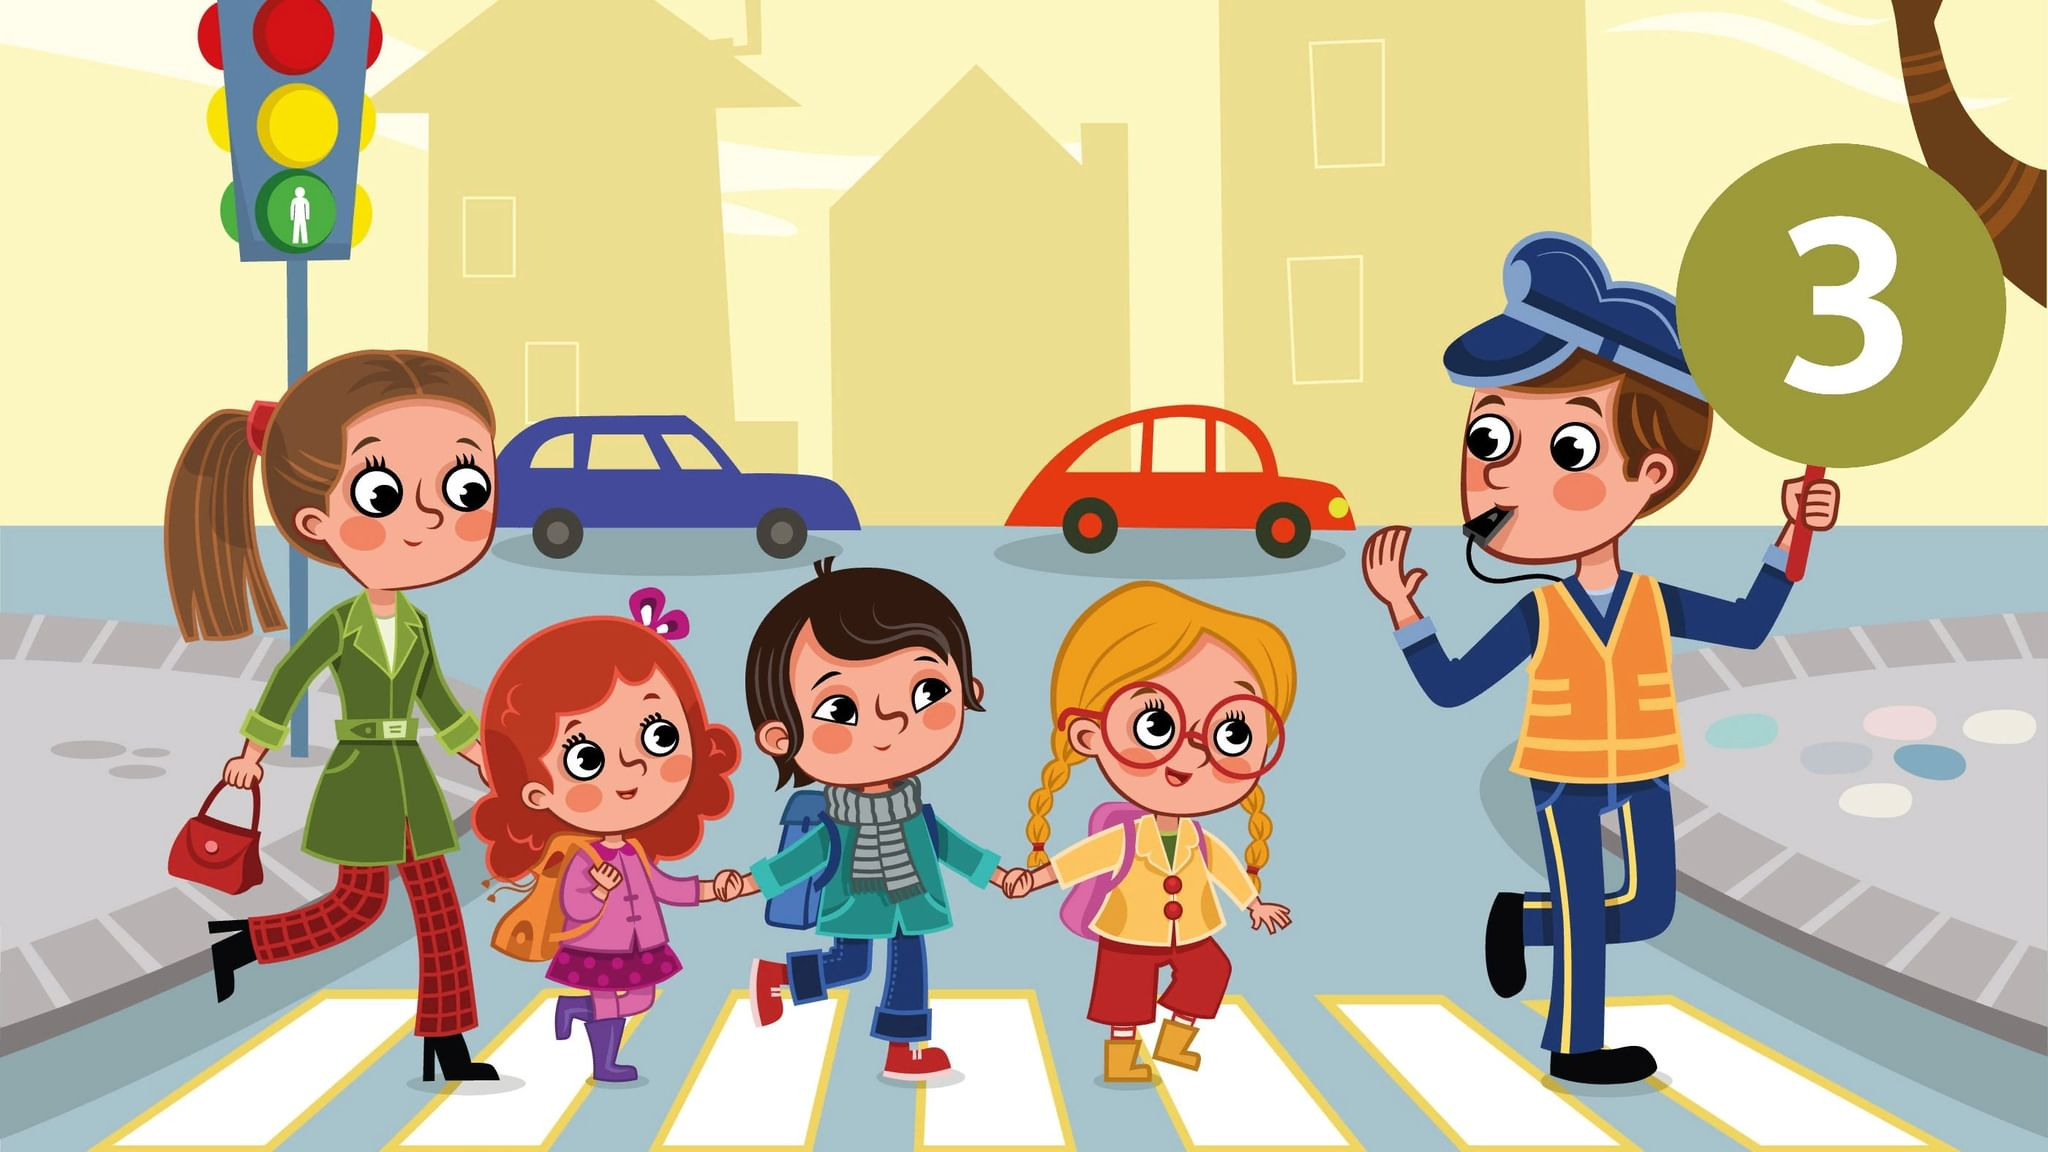 Конкурс будь в движении. Правила дорожного движения для детей. ПДД картинки для детей. Дети пешеходы. Безопасность на дороге для детей.